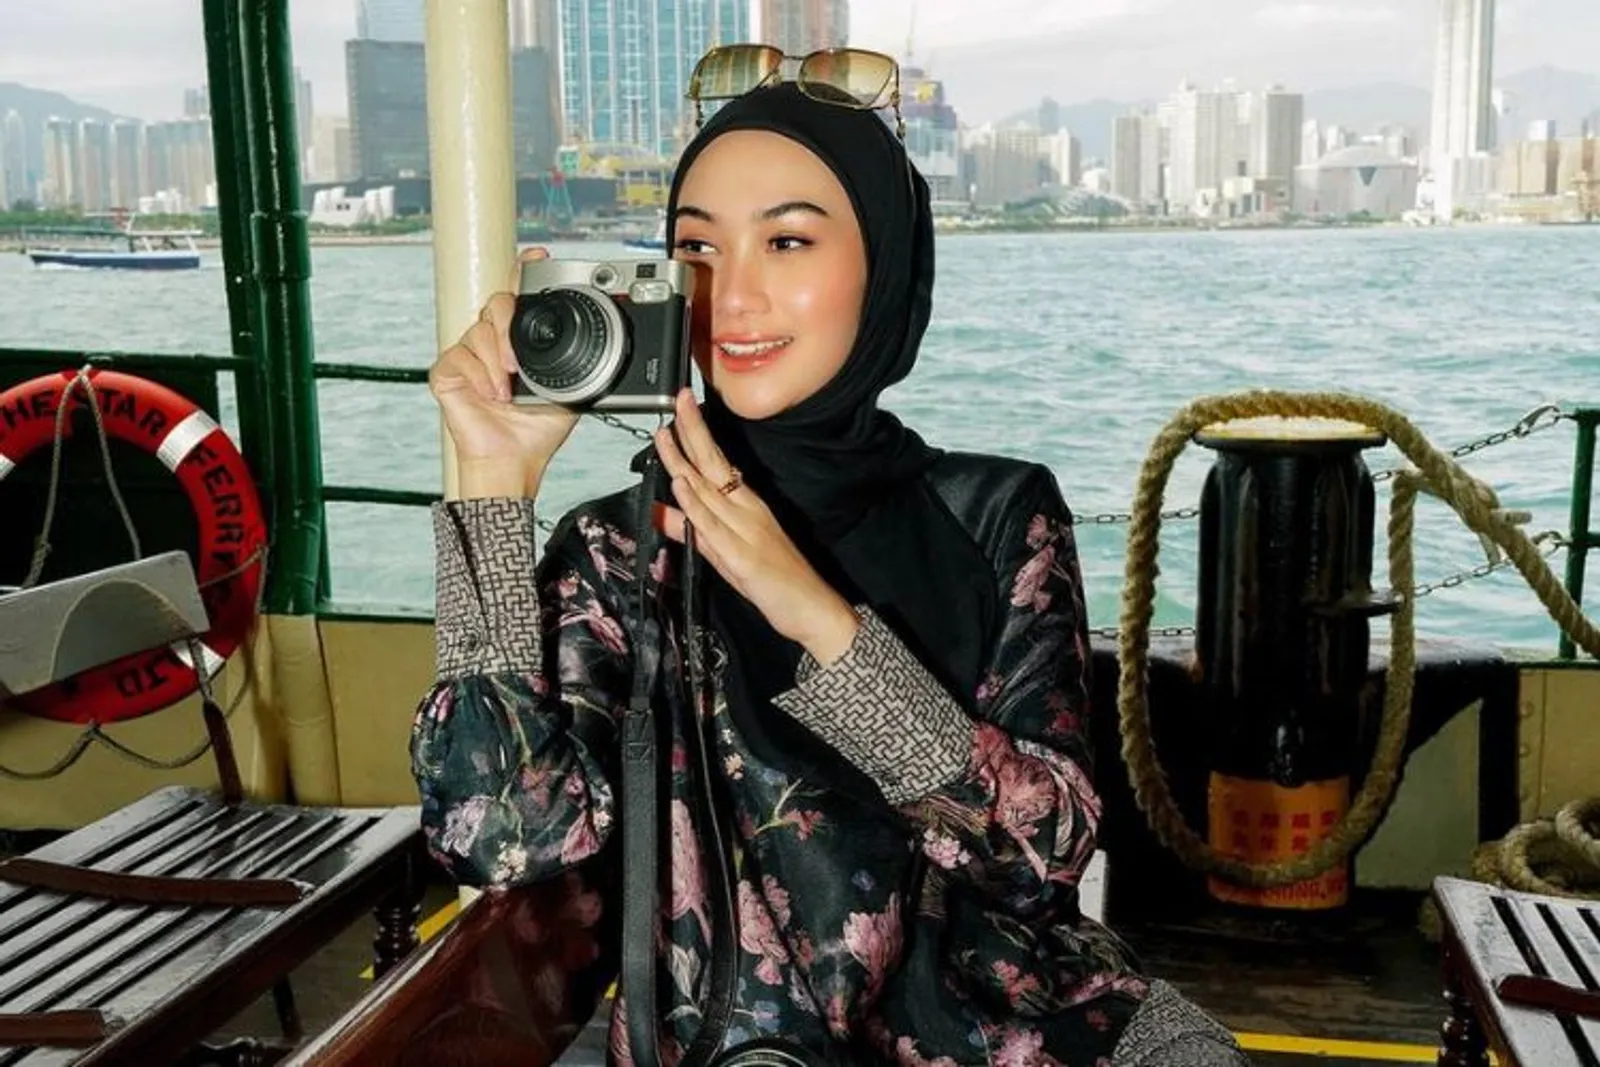 HKTB x Nada Puspita Ciptakan Kolaborasi Wisata Muslim Melalui Pakaian